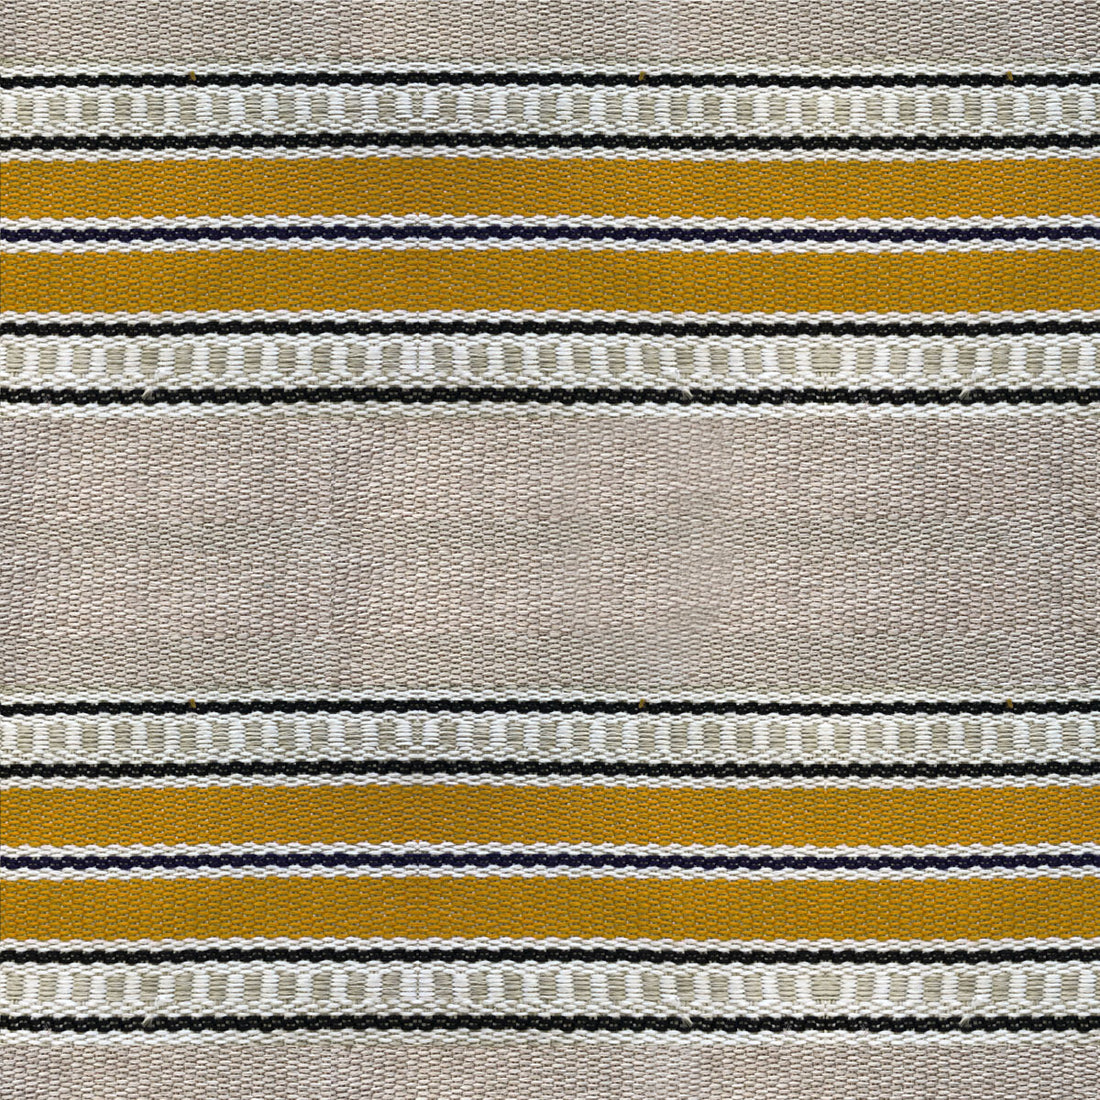 Adam fabric in amarillo color - pattern LCT1068.002.0 - by Gaston y Daniela in the Lorenzo Castillo VI collection